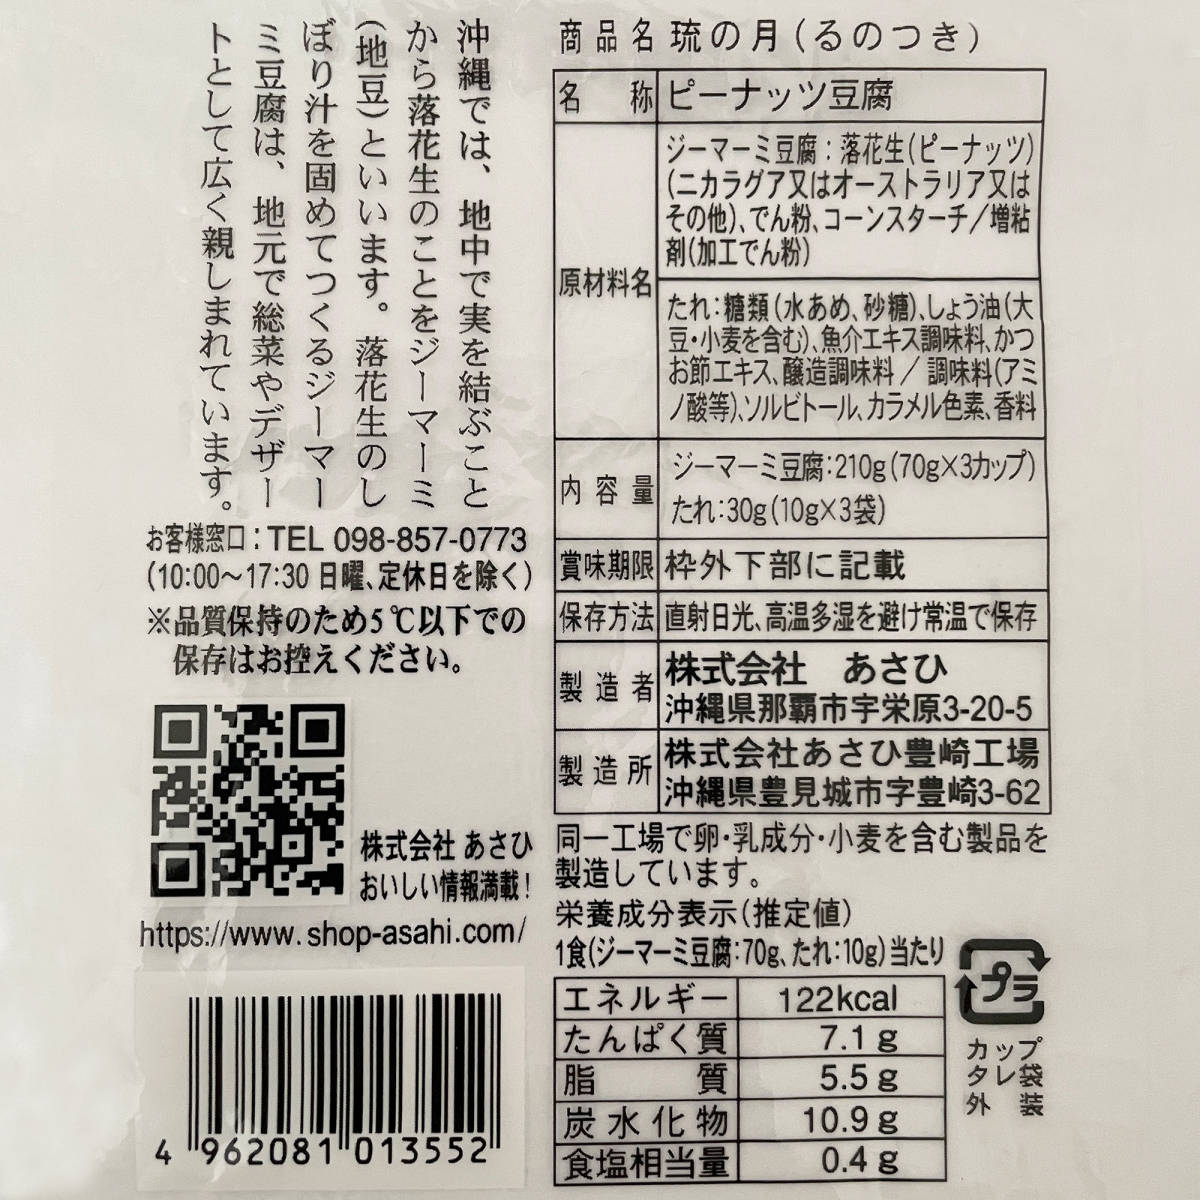  Okinawa. тест ji-ma-mi тофу .. месяц 4 пакет 12 cup обычная температура модель ... качественный продукт . земля производство ваш заказ 